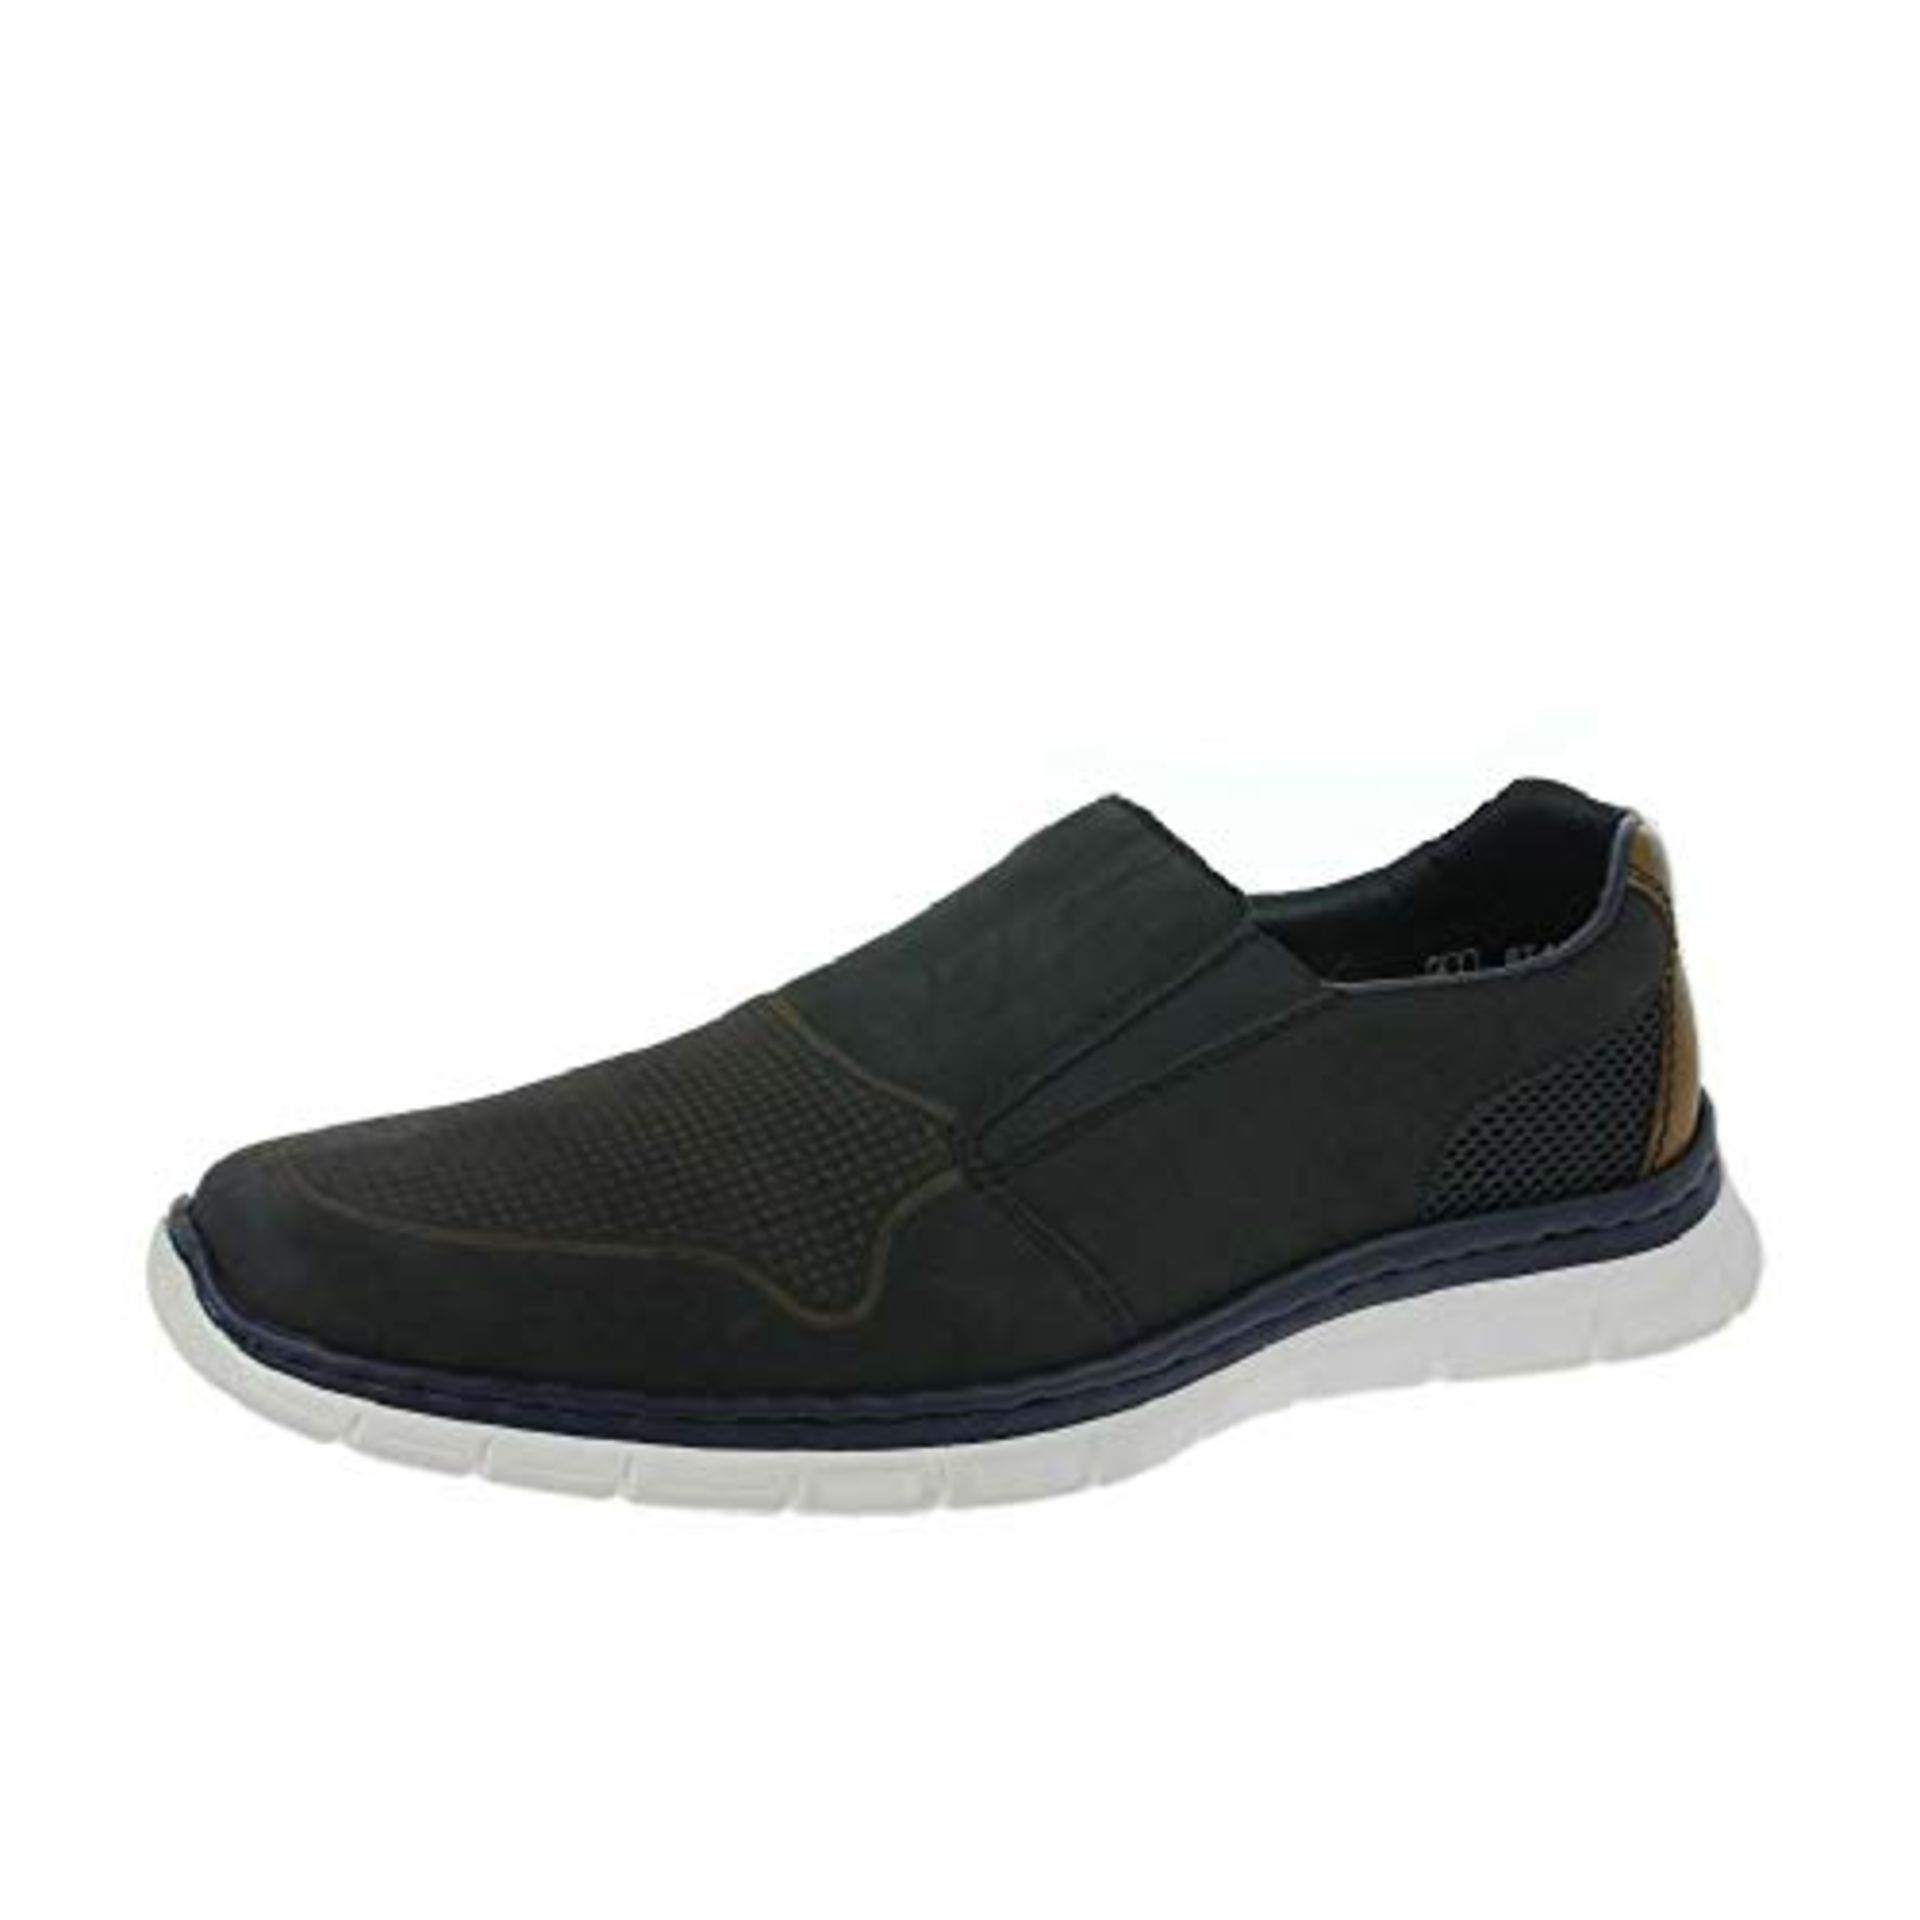 Rieker B4875 Mens Shoes EU41 Blue (14) Shoetique86833 |4059954416678